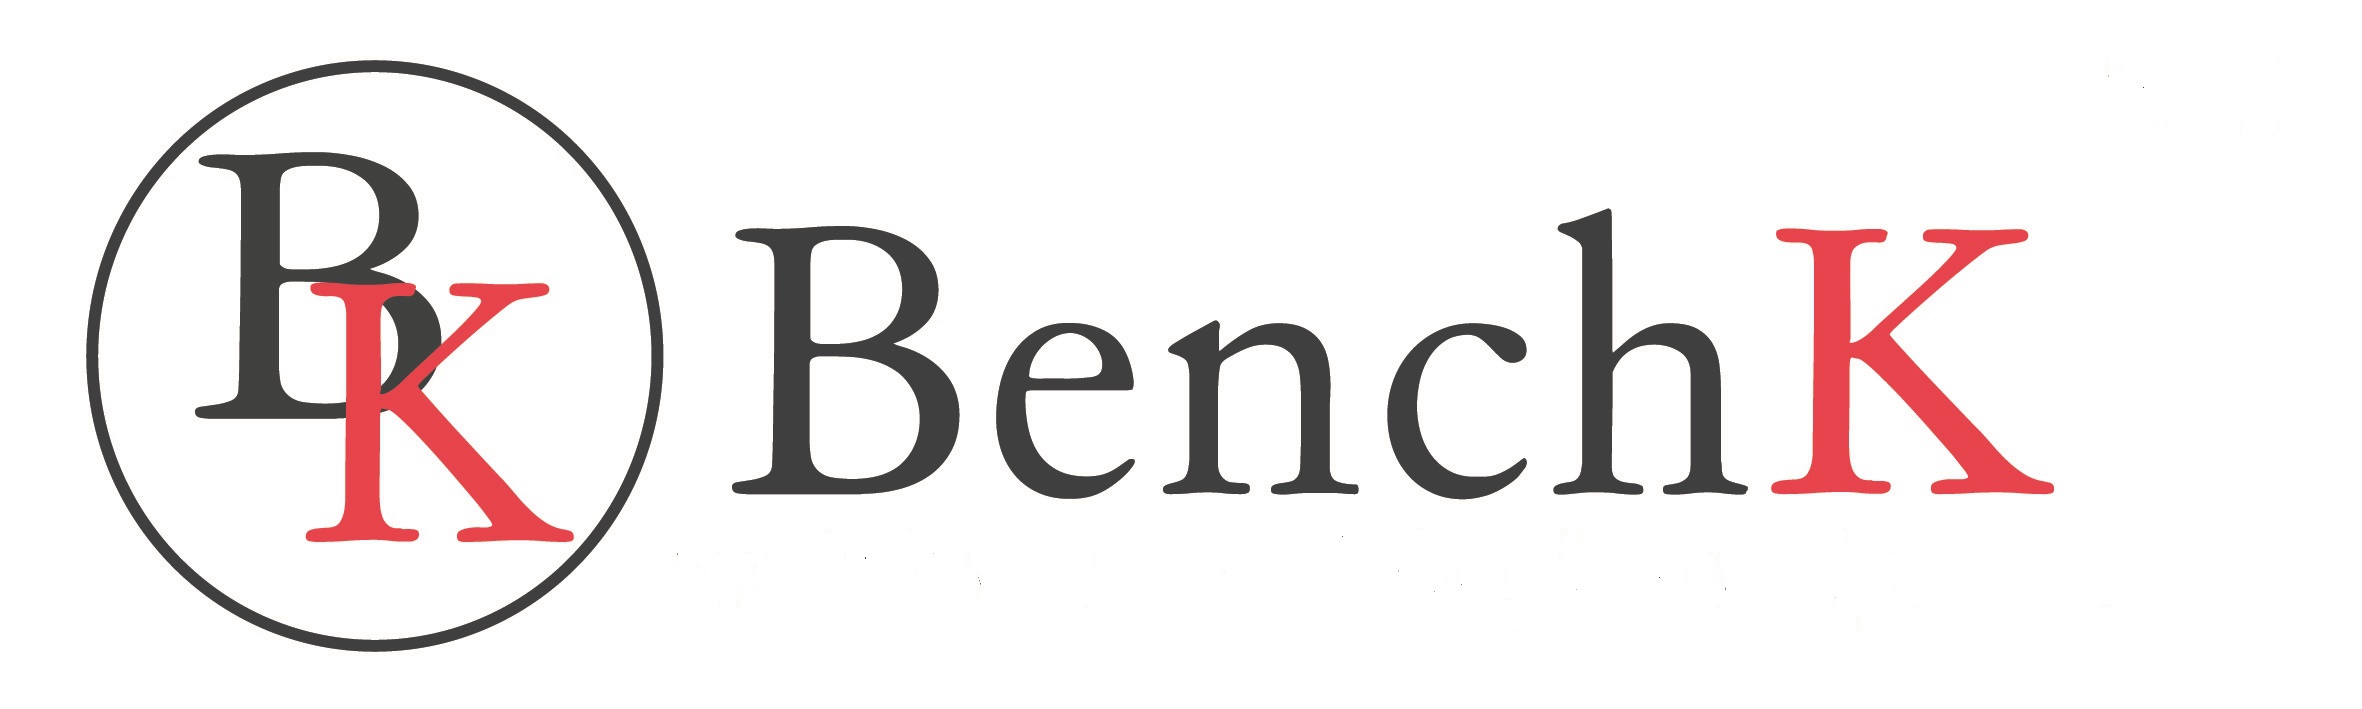 benchk logo